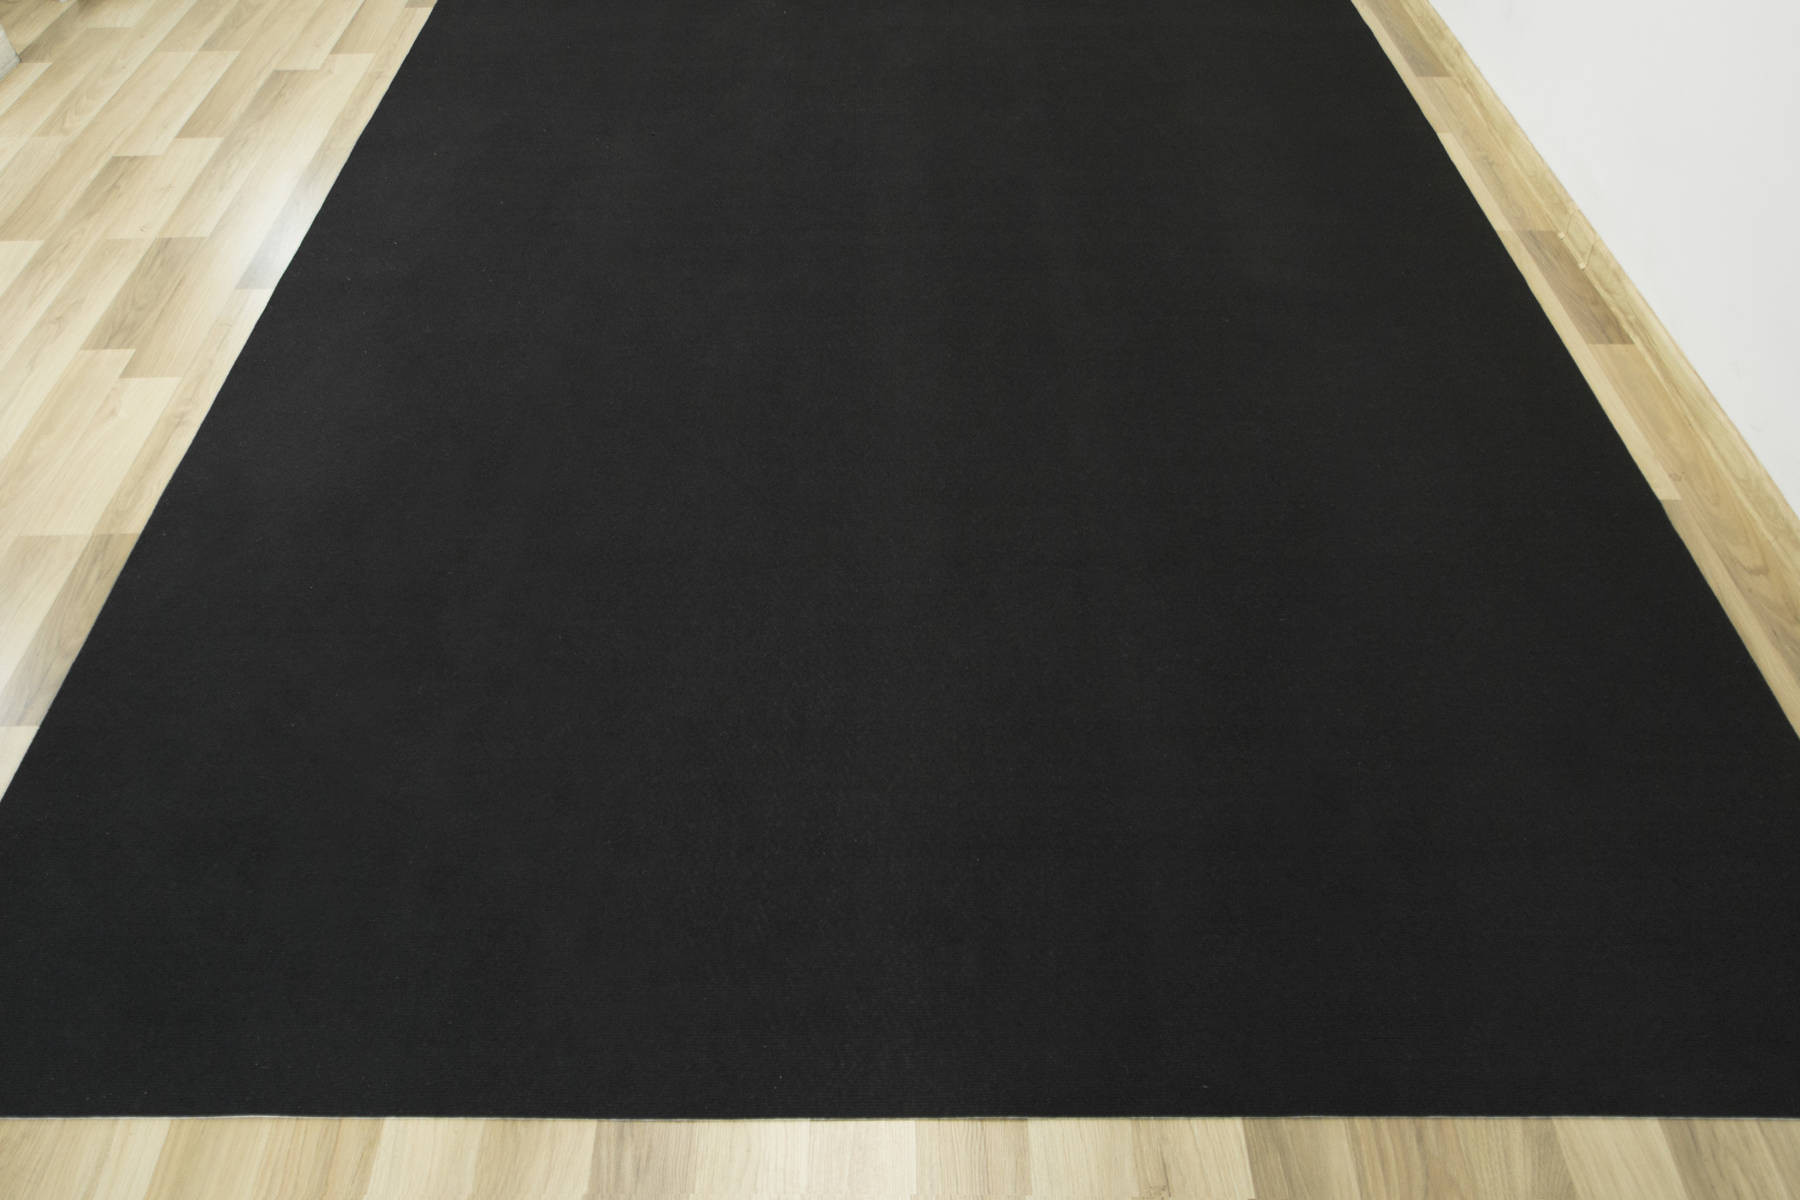 Metrážový koberec Star s filcem 77 černý